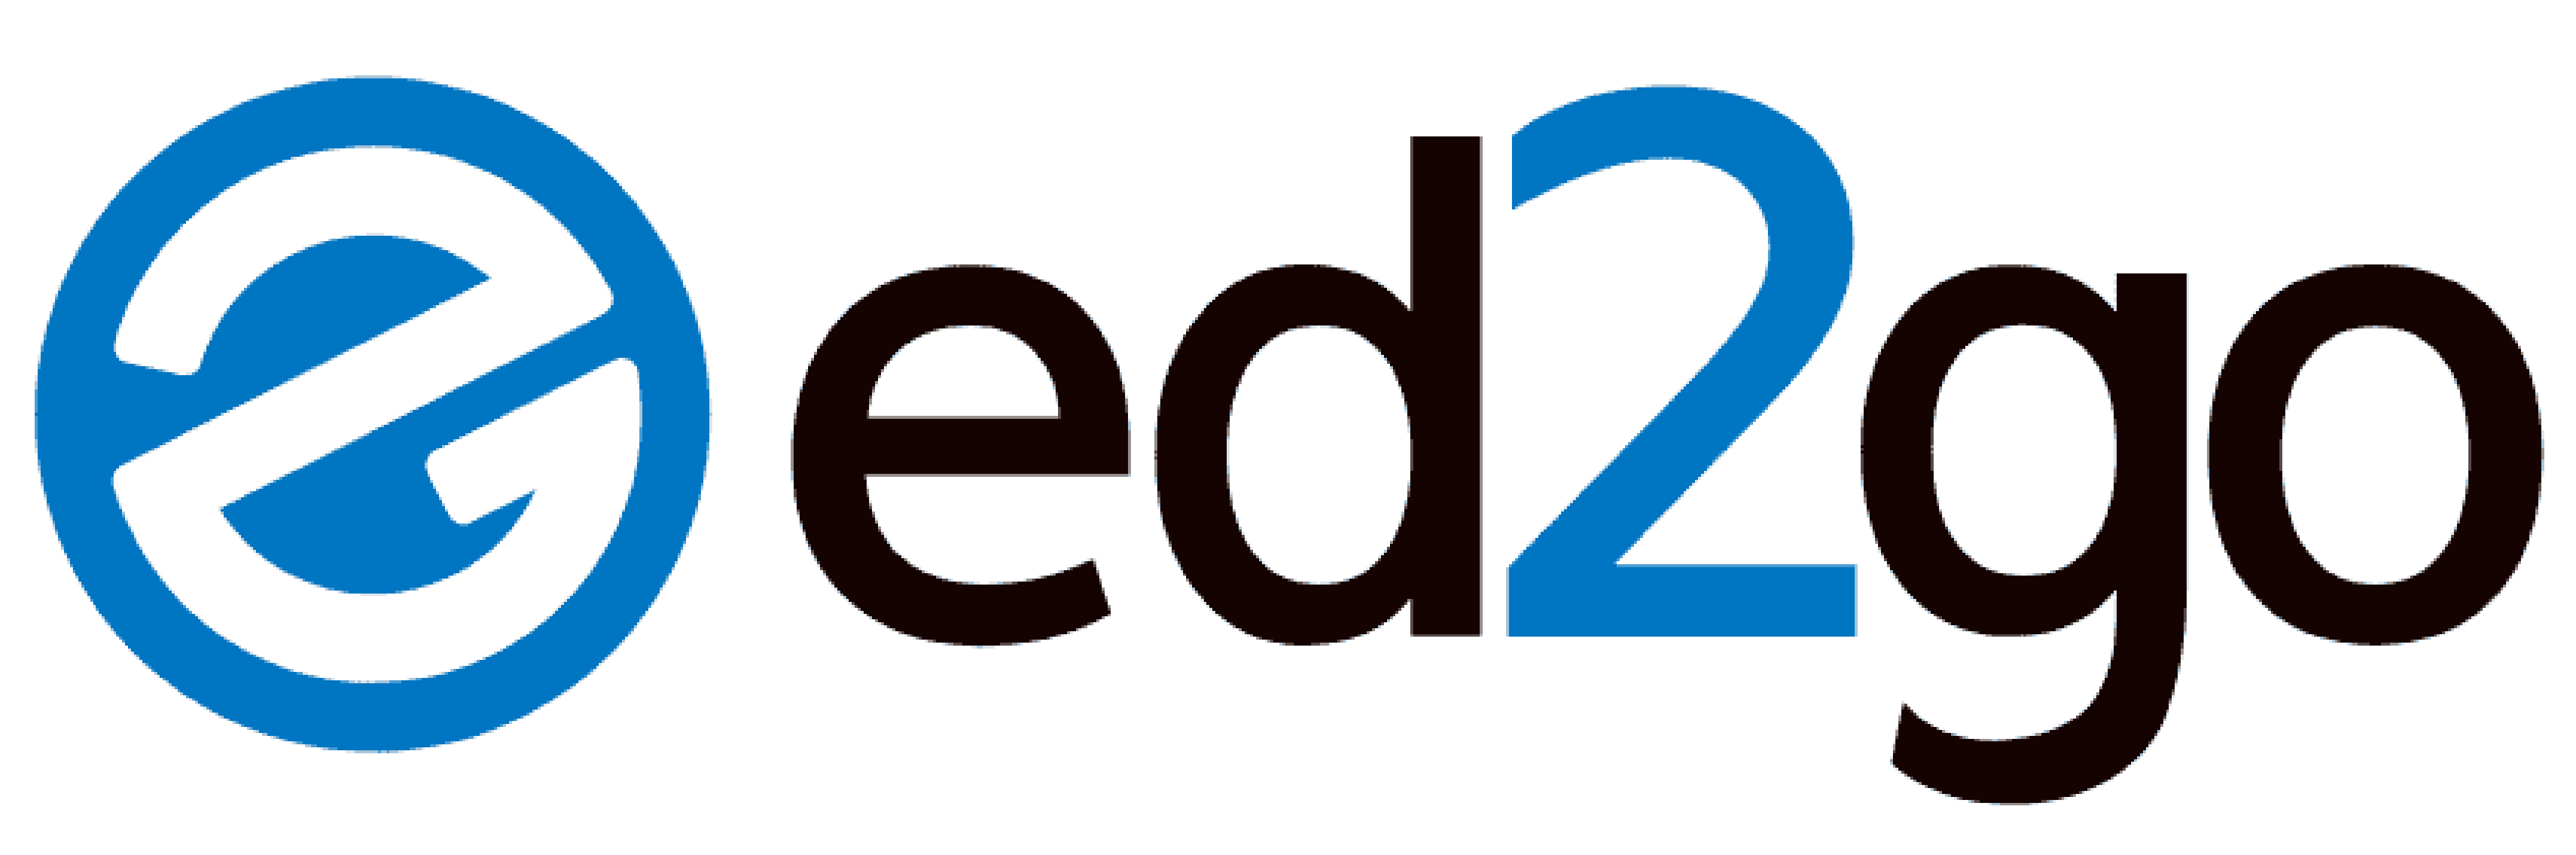 ed2go-logo-vector.jpg